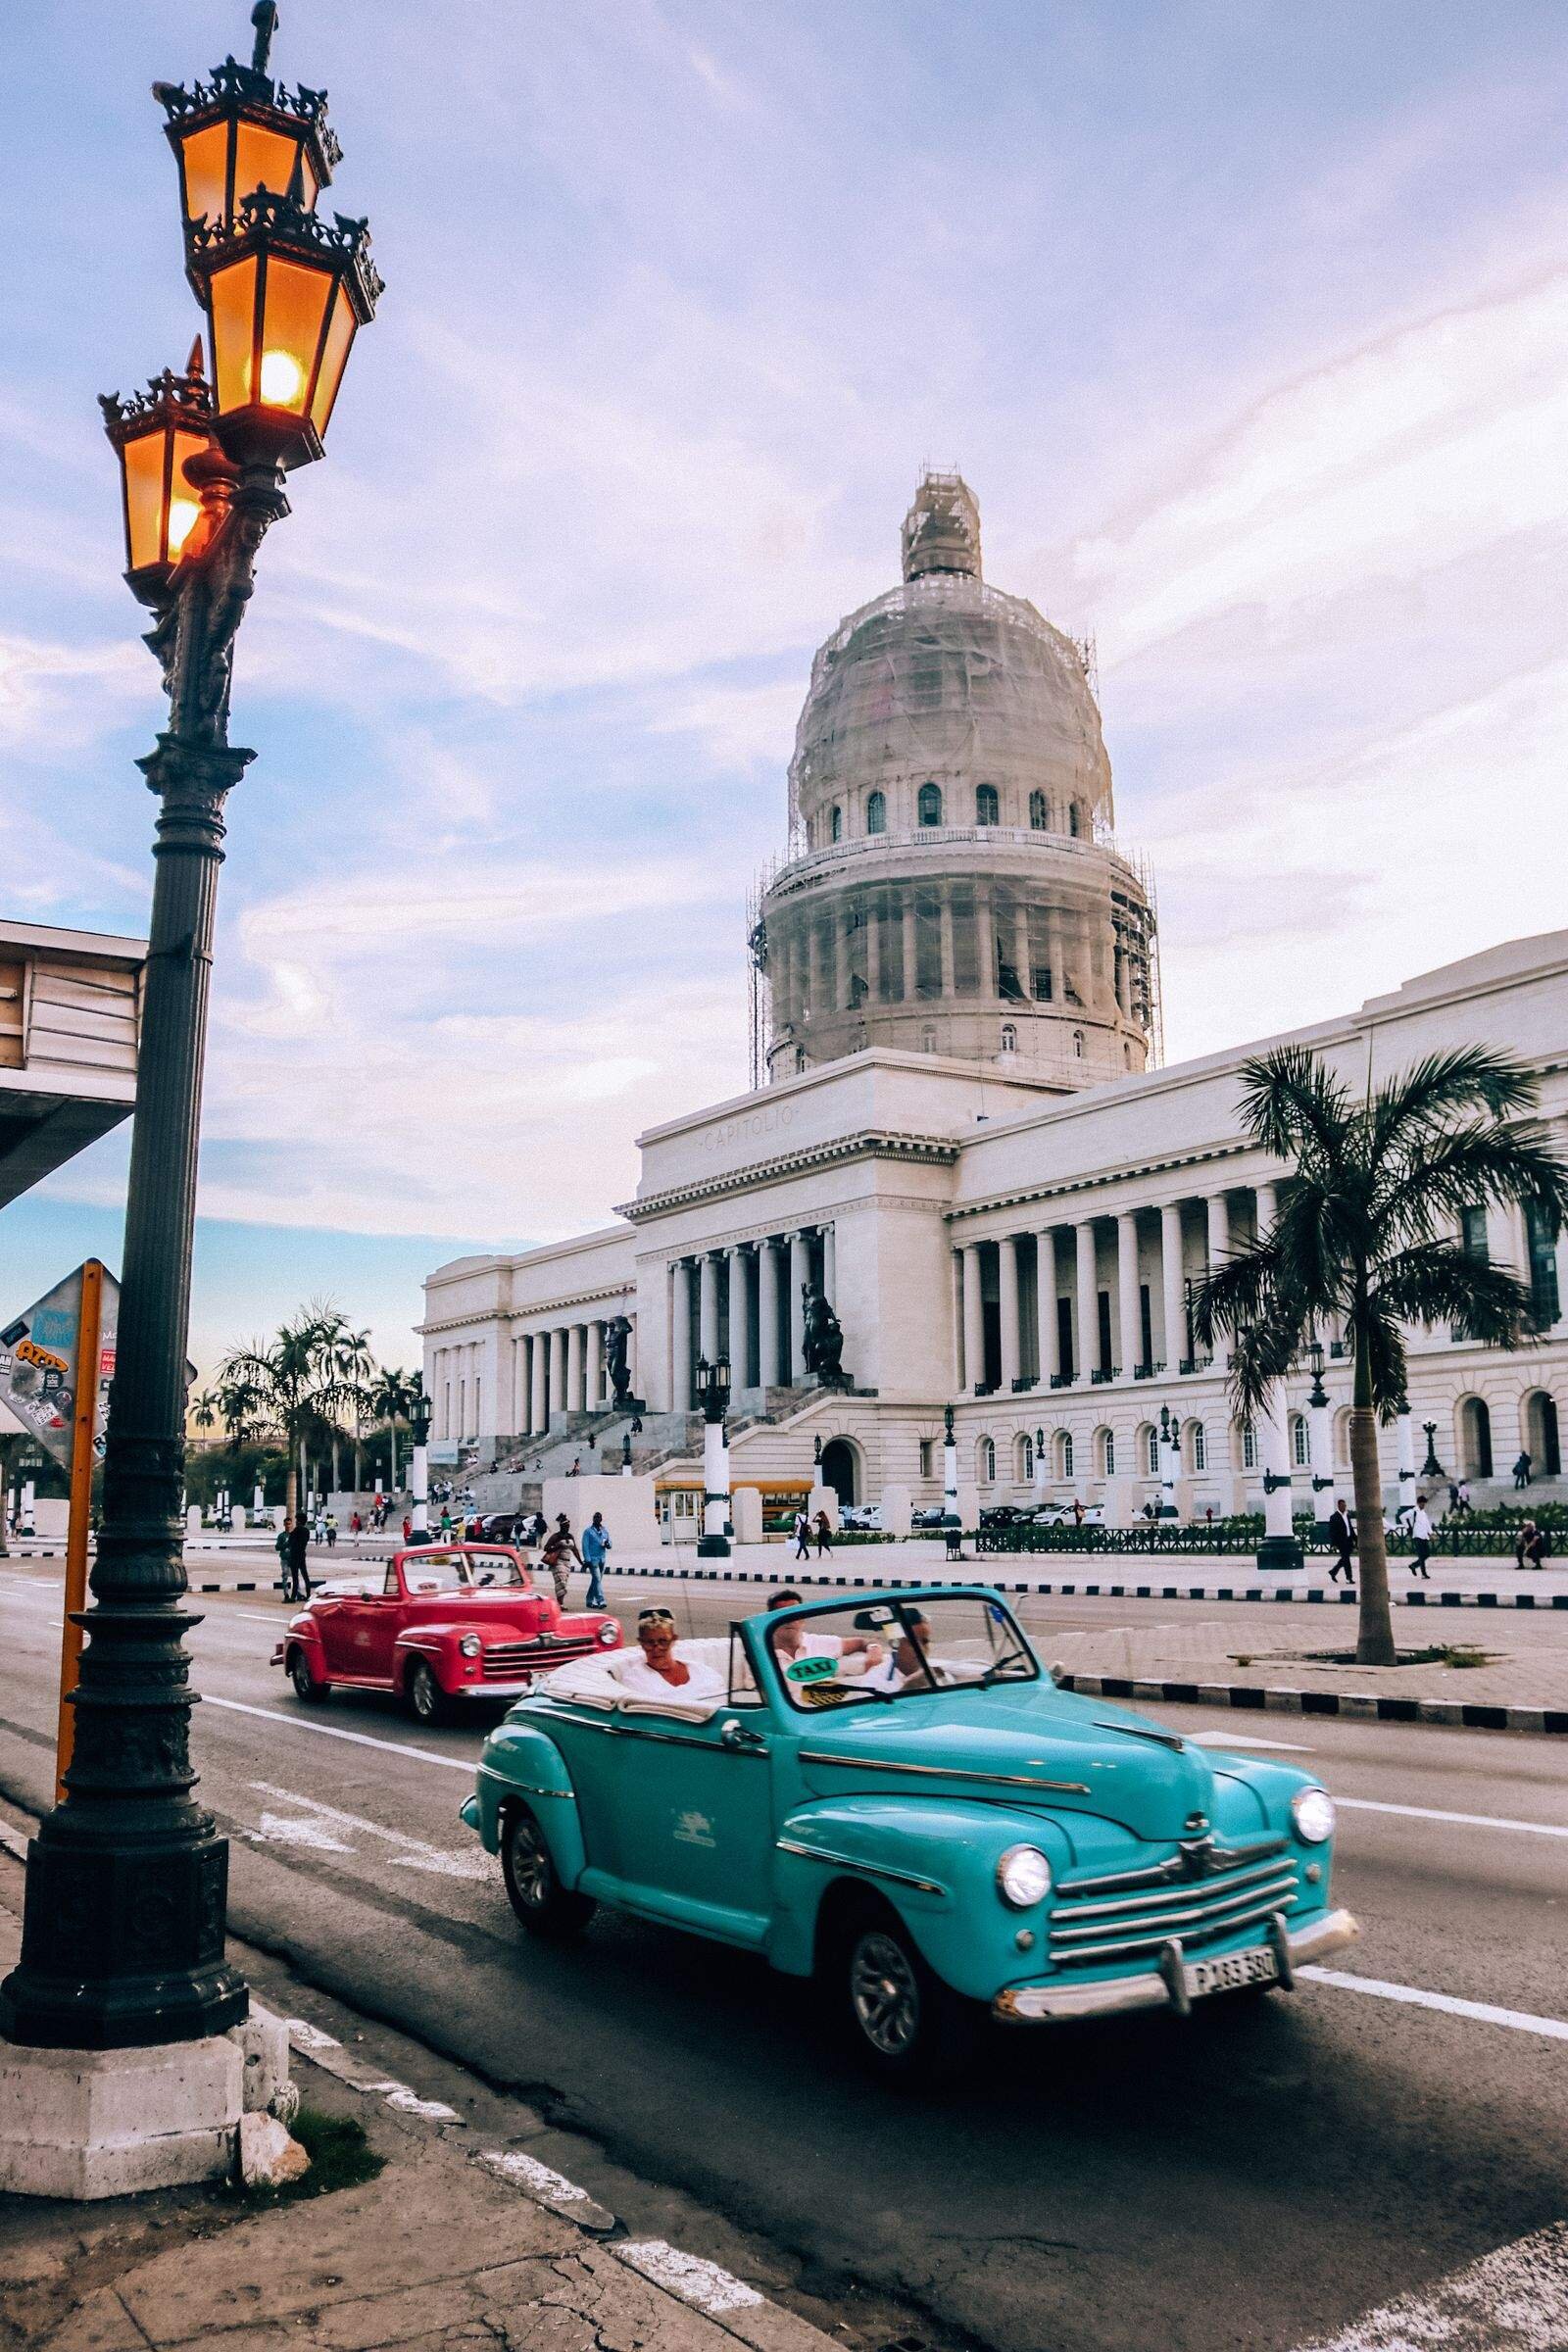 Havana classic cars and El Capitolio